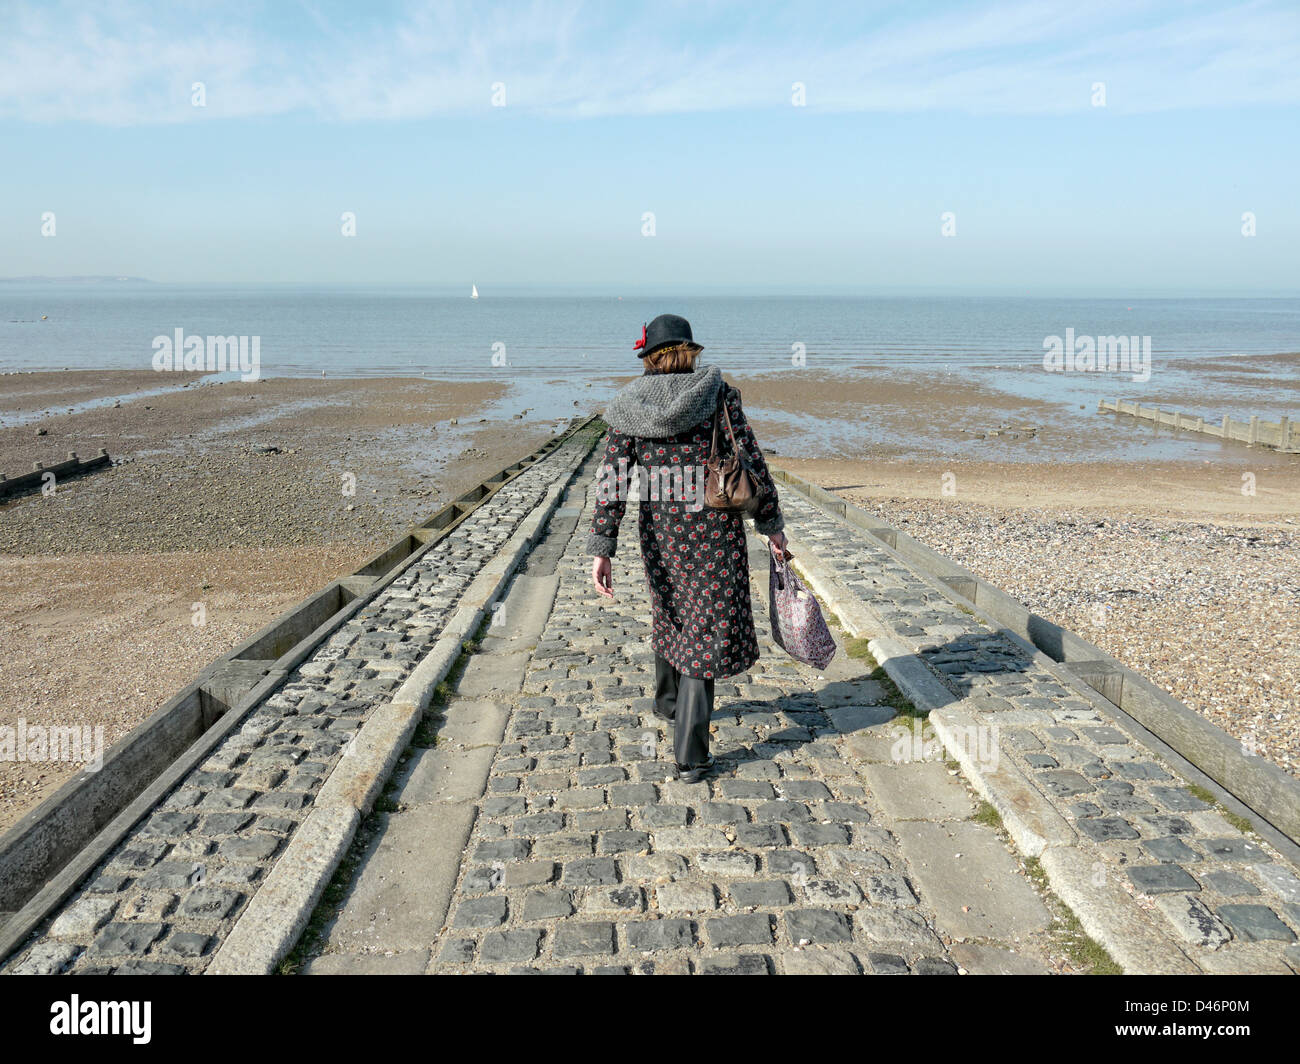 Lady walks down a jetty towards the sea Stock Photo